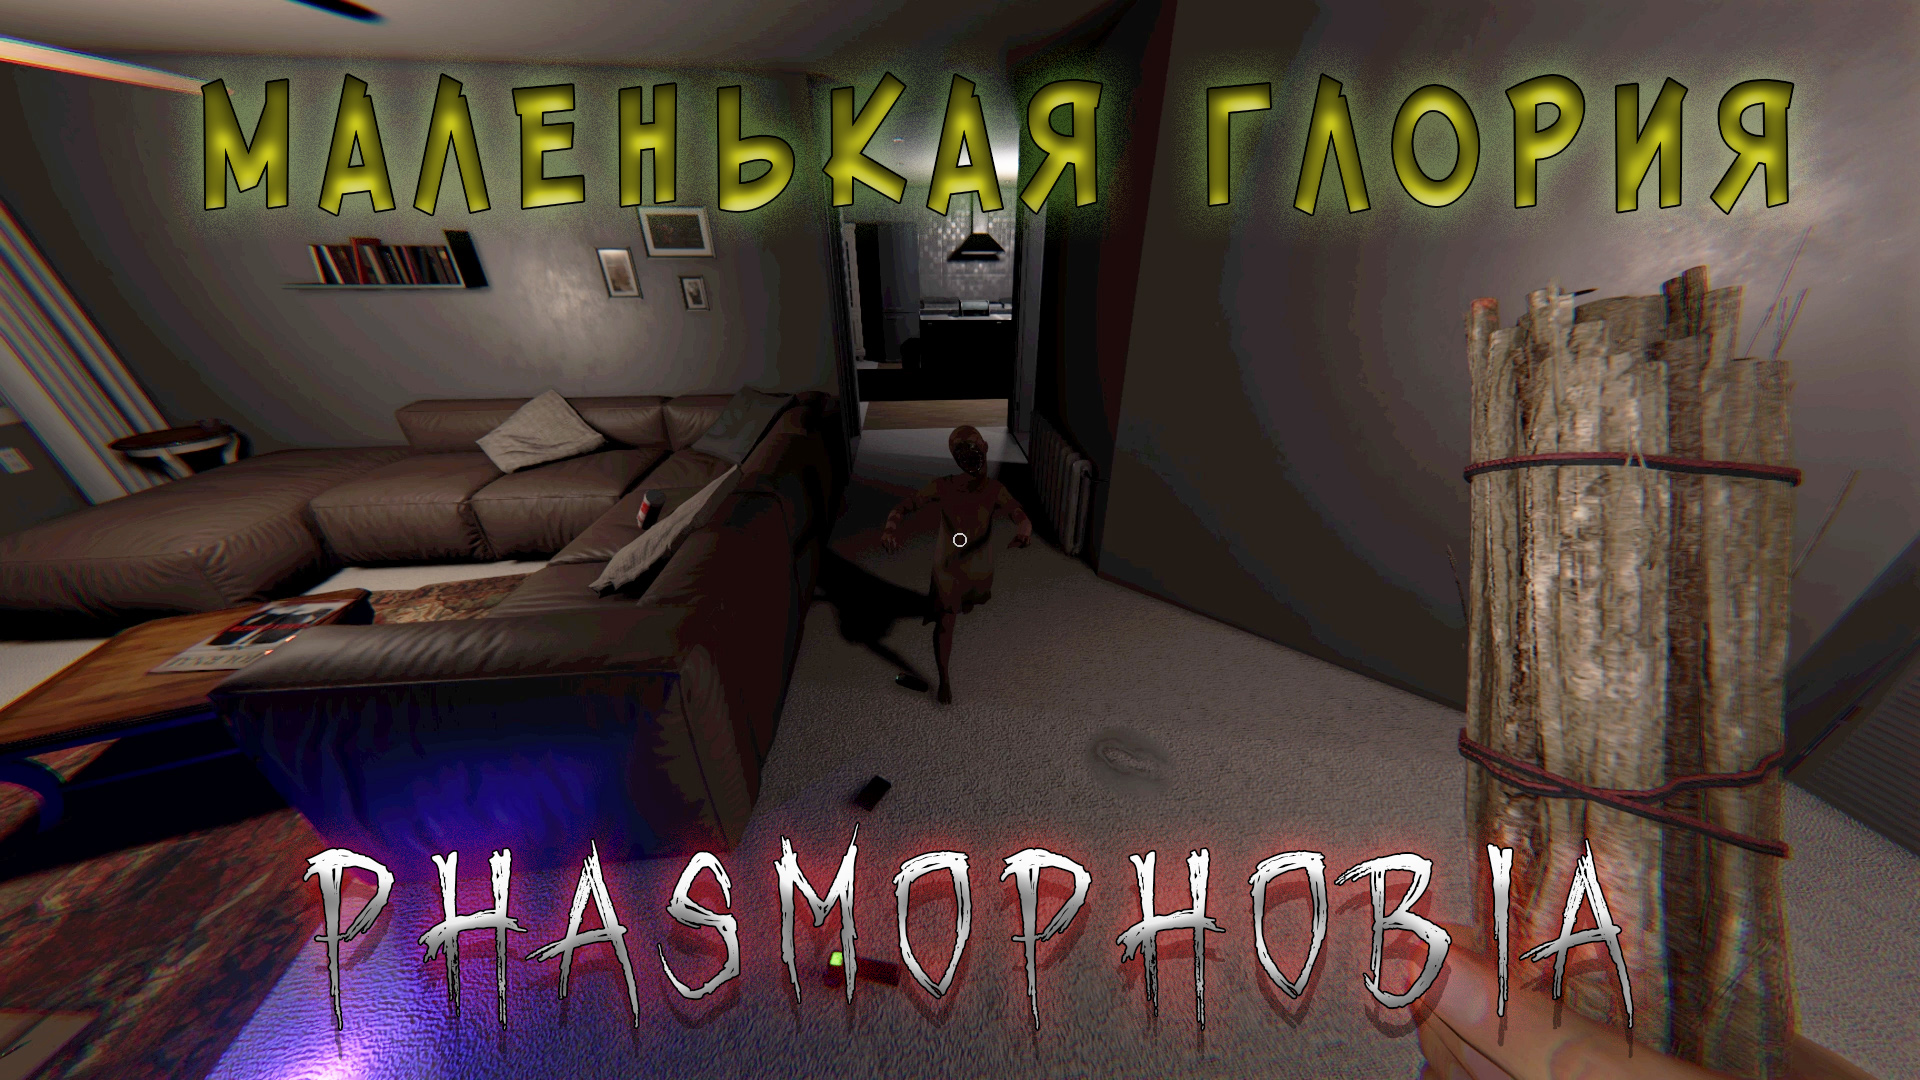 Phasmophobia распознавание русской речи фото 116